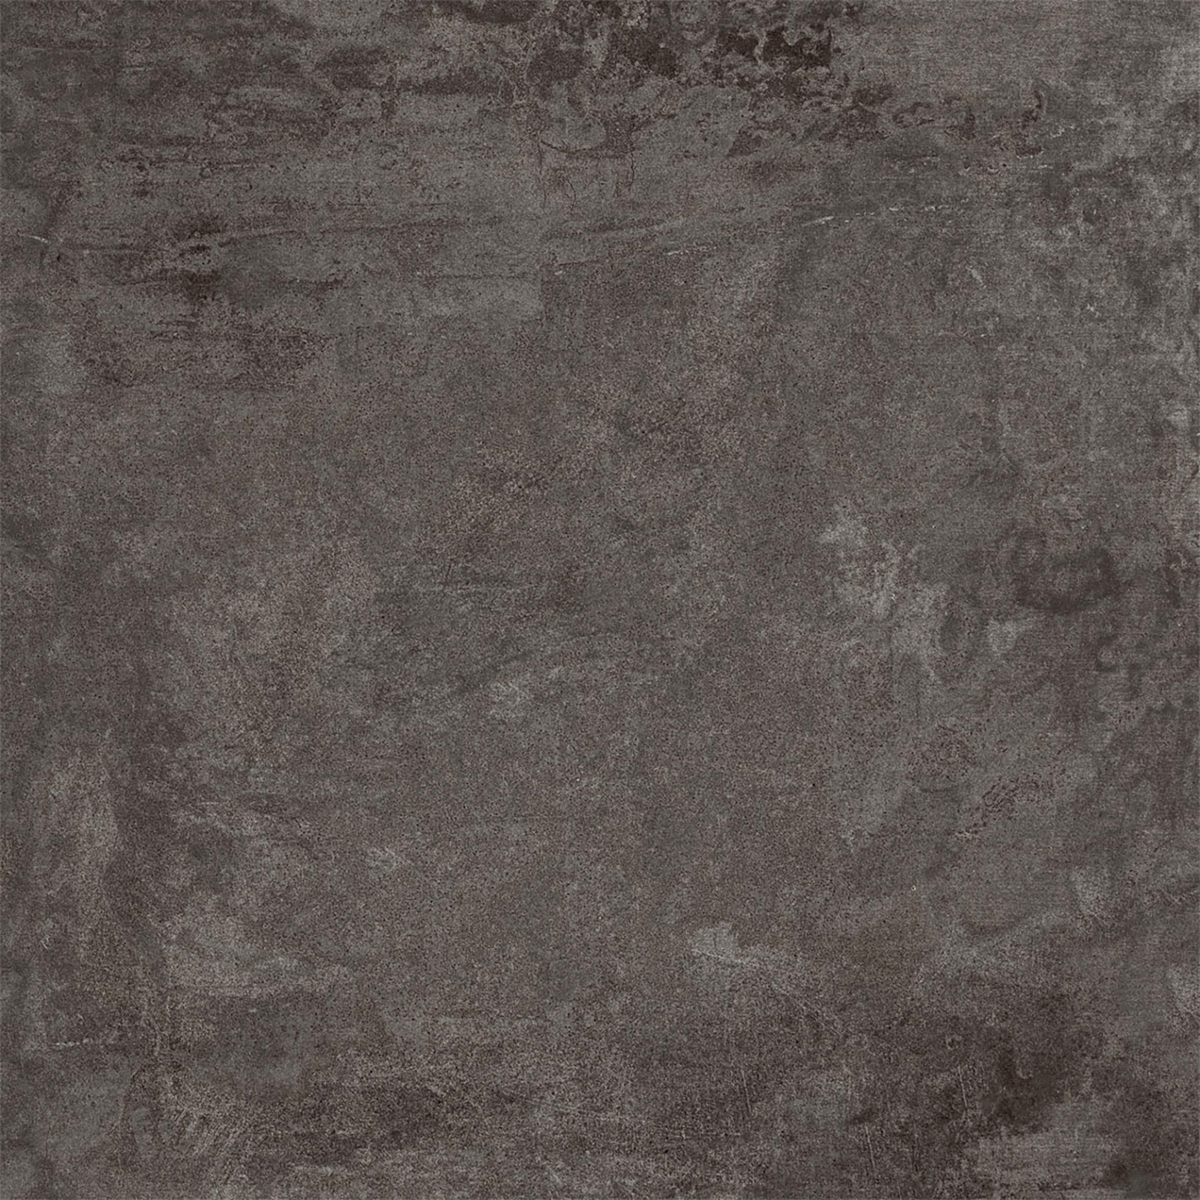 Cerabeton anthracite 60x60cm